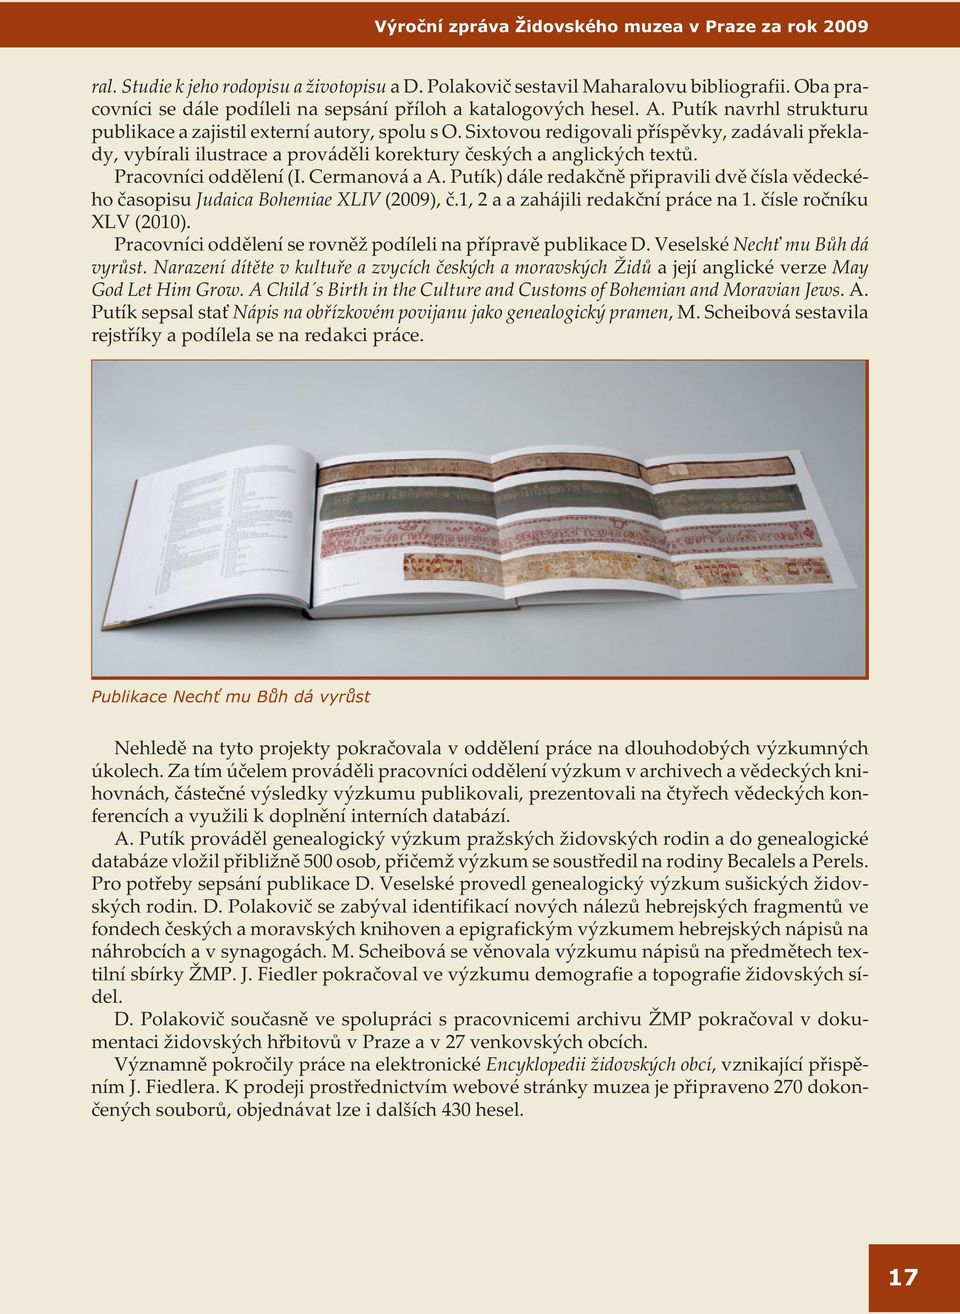 Pracovníci oddìlení (I. Cermanová a A. Putík) dále redakènì pøipravili dvì èísla vìdeckého èasopisu Judaica Bohemiae XLIV (2009), è.1, 2 a azahájili redakèní práce na 1. èísle roèníku XLV (2010).